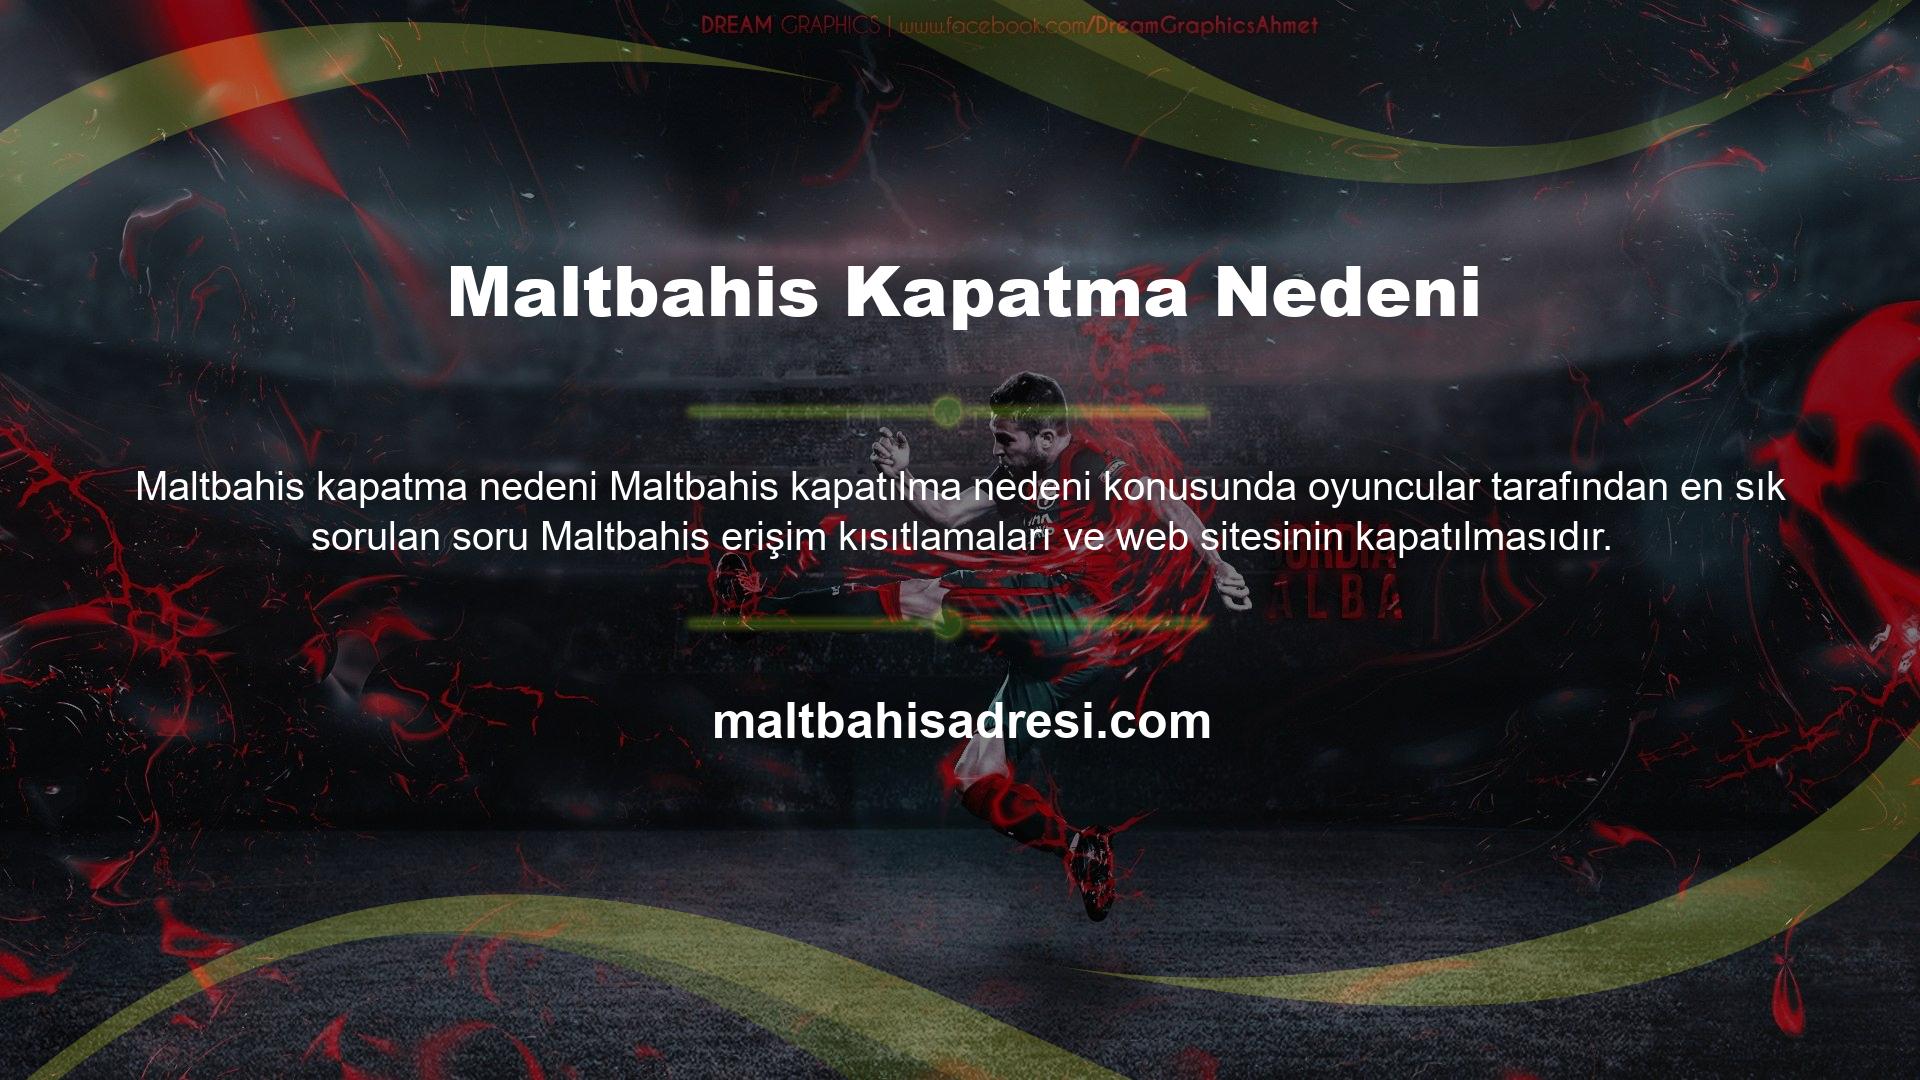 Ülkemizde faaliyet gösteren diğer tüm bahis siteleri gibi Maltbahis de reklam vermek yasa dışı kabul edilmektedir